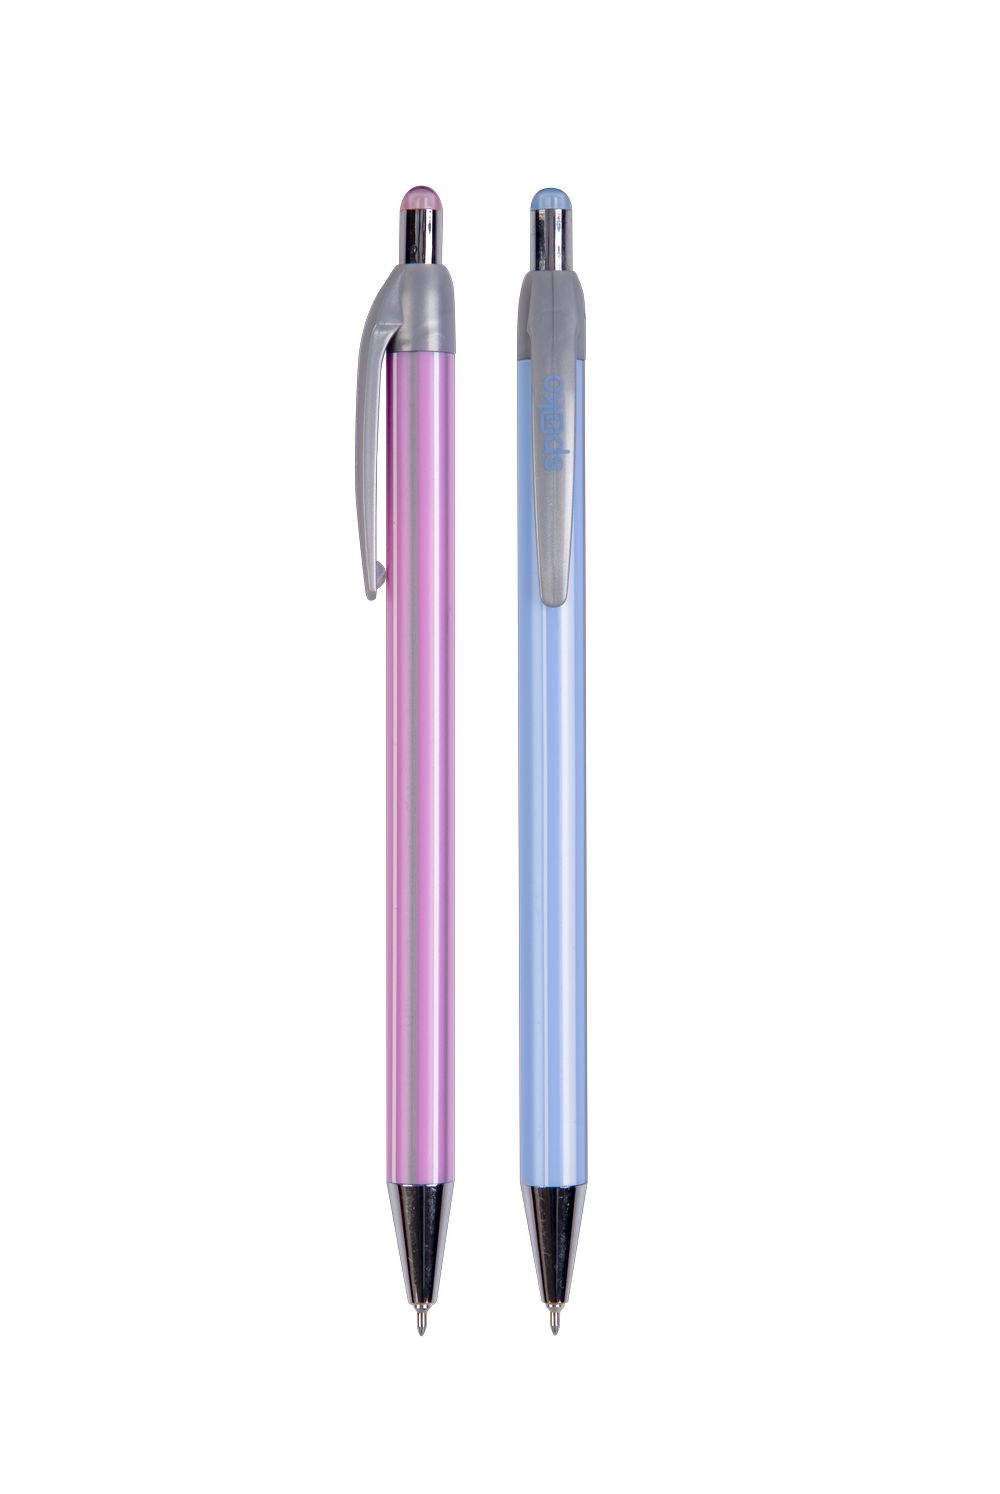 Pero kuličkové Spoko Stripes modrá náplň 0,3mm mix modré a růžové